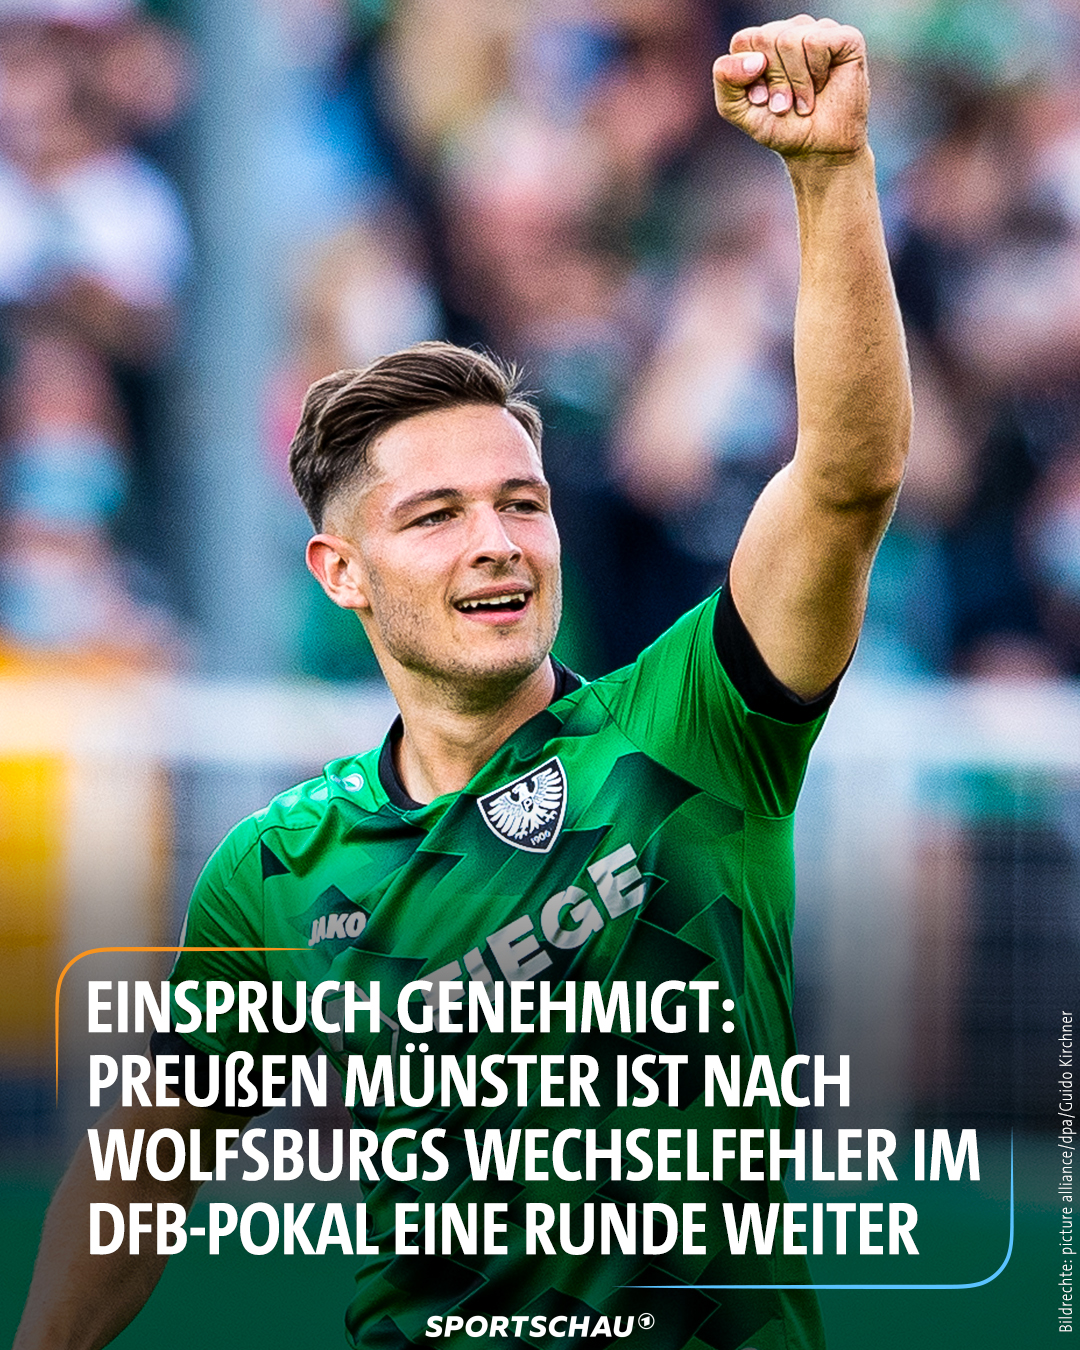 From Sportschau (@sportschau)